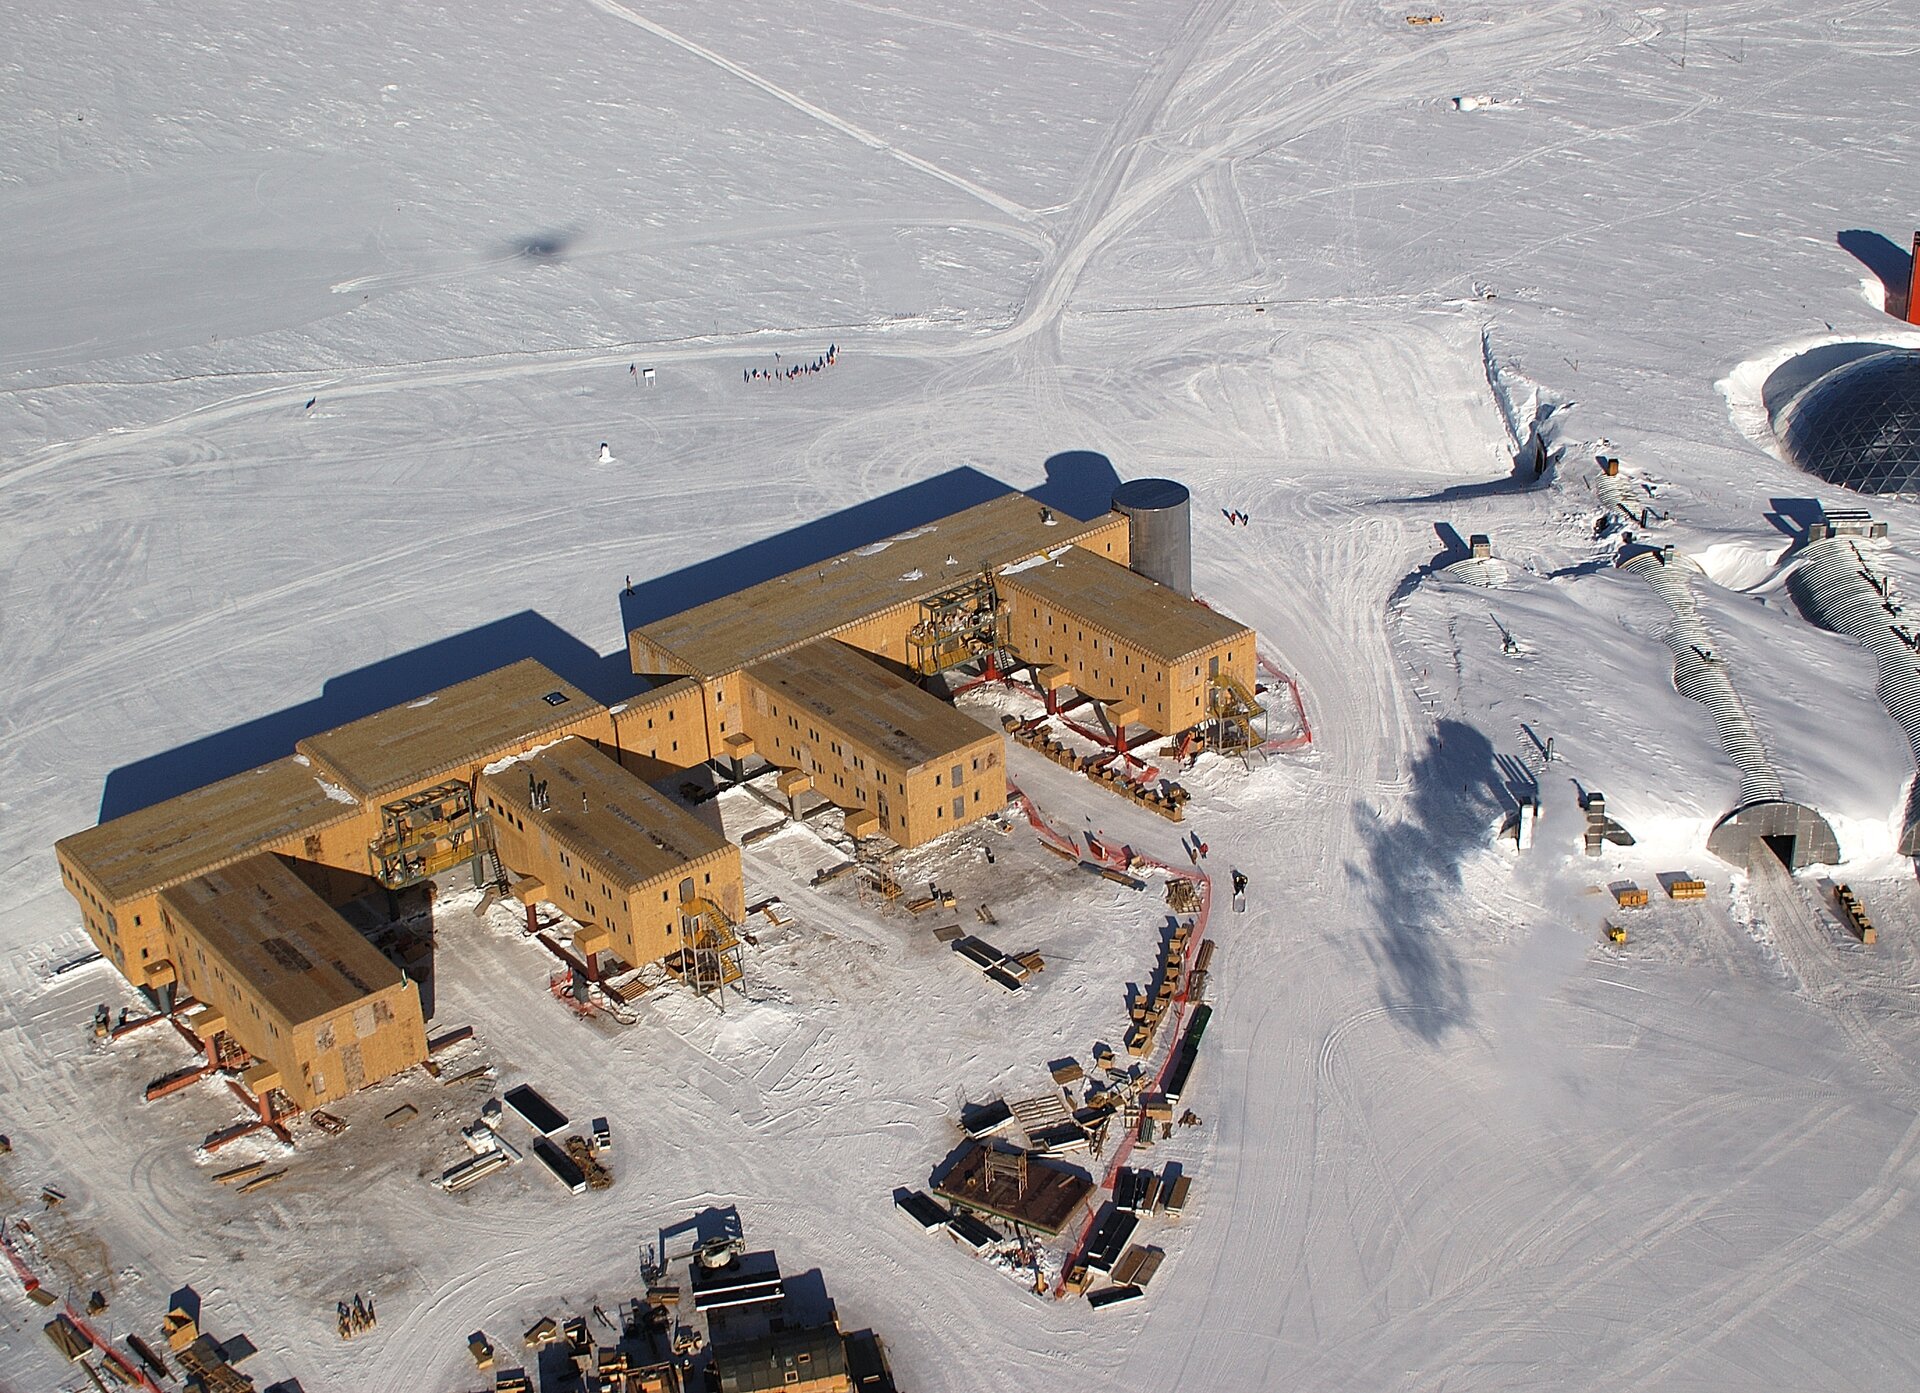 Na zdjęciu lotniczym kompleks kilku jednopiętrowych, jasnobrązowych budynków na ośnieżonym terenie. Z prawej strony trzy zabudowania o kształcie półokrągłych tuneli przysypane śniegiem po dach.